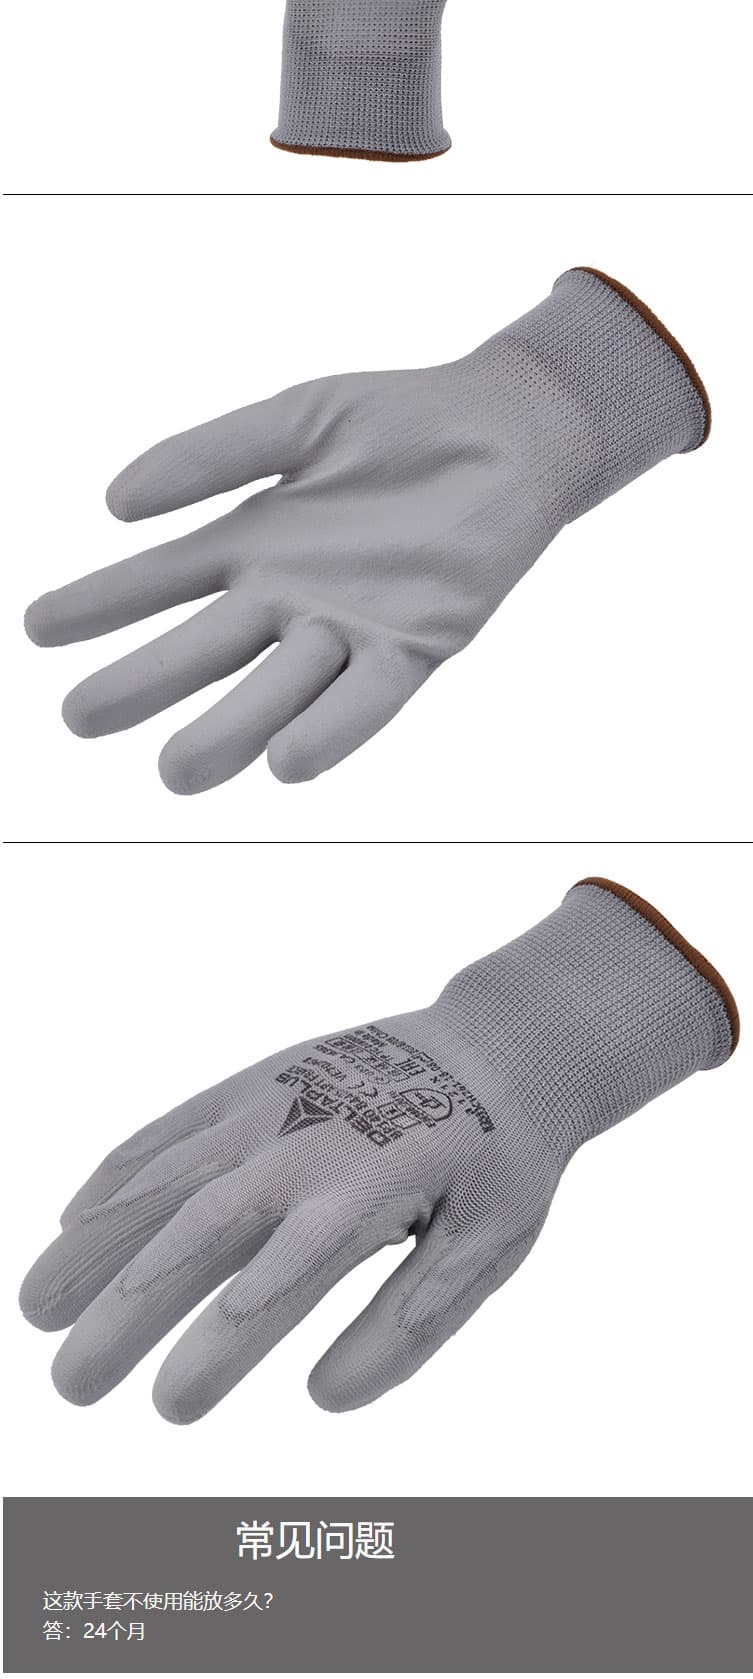 代尔塔 201705 PU涂层精细操作手套